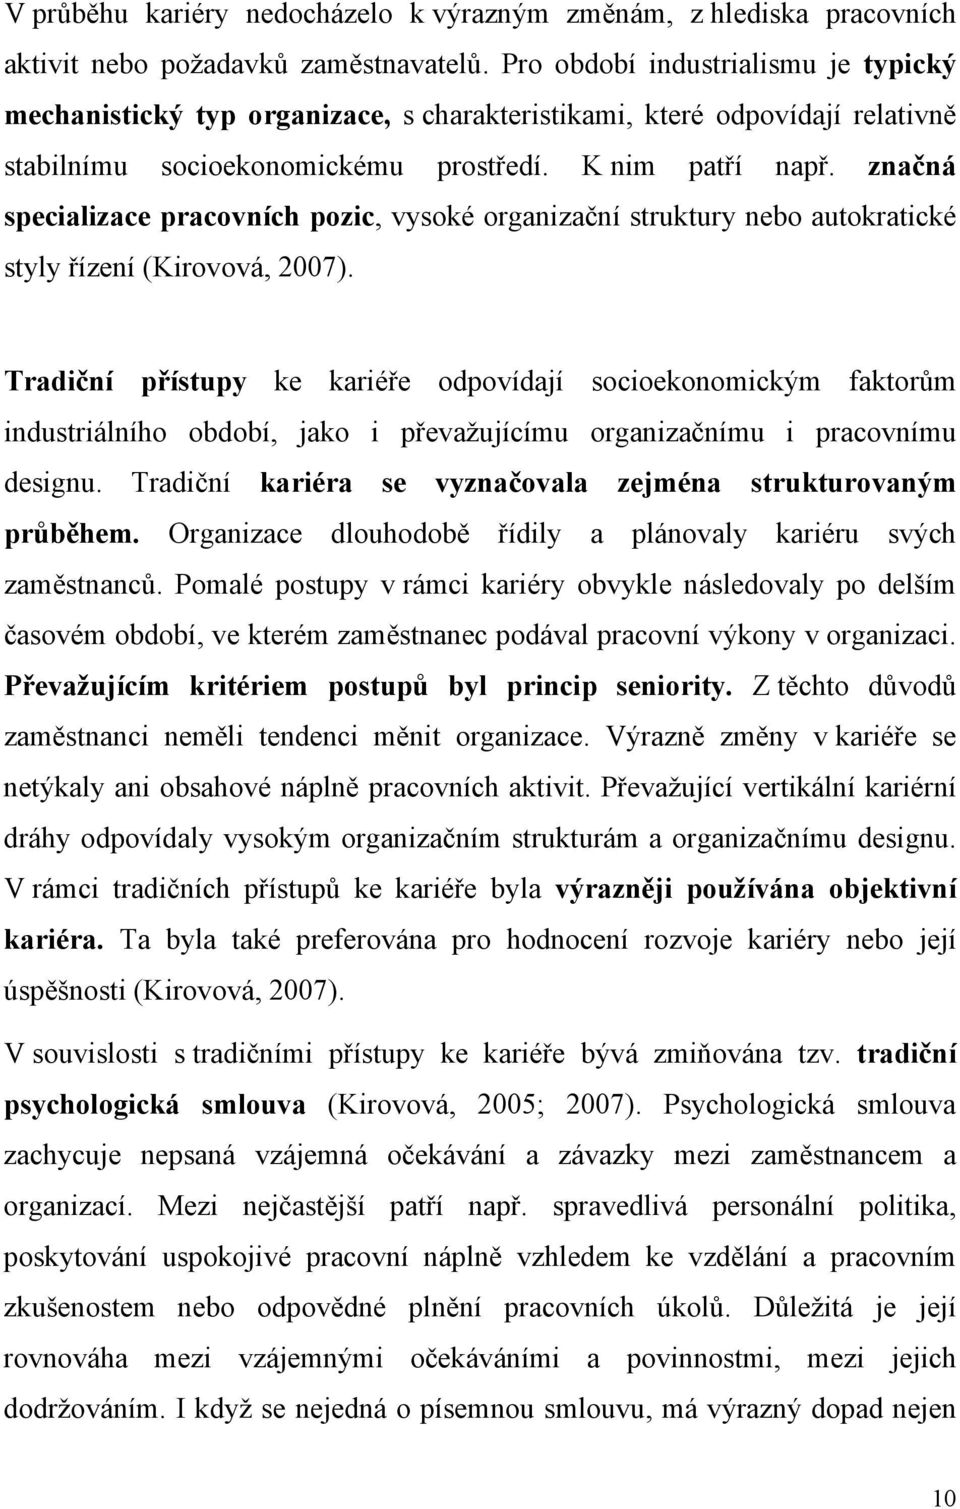 značná specializace pracovních pozic, vysoké organizační struktury nebo autokratické styly řízení (Kirovová, 2007).